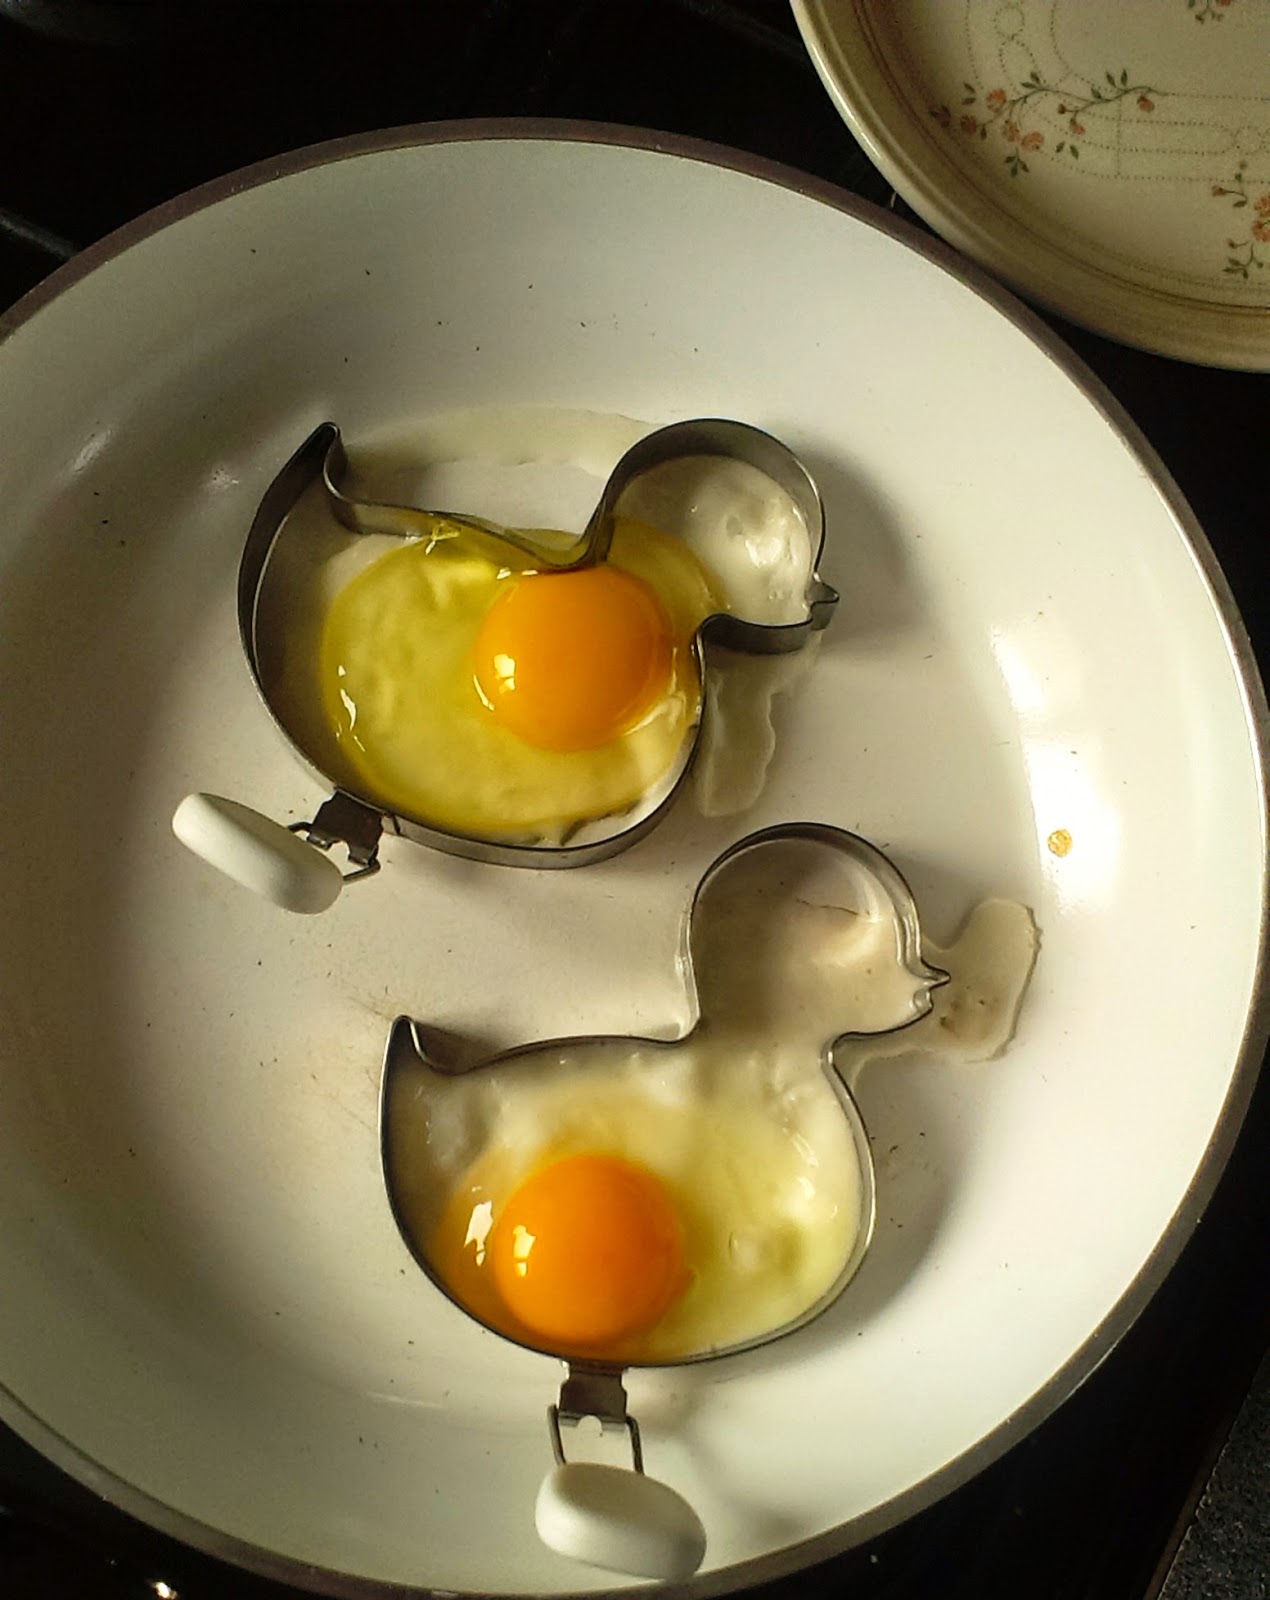 Fried egg ducks